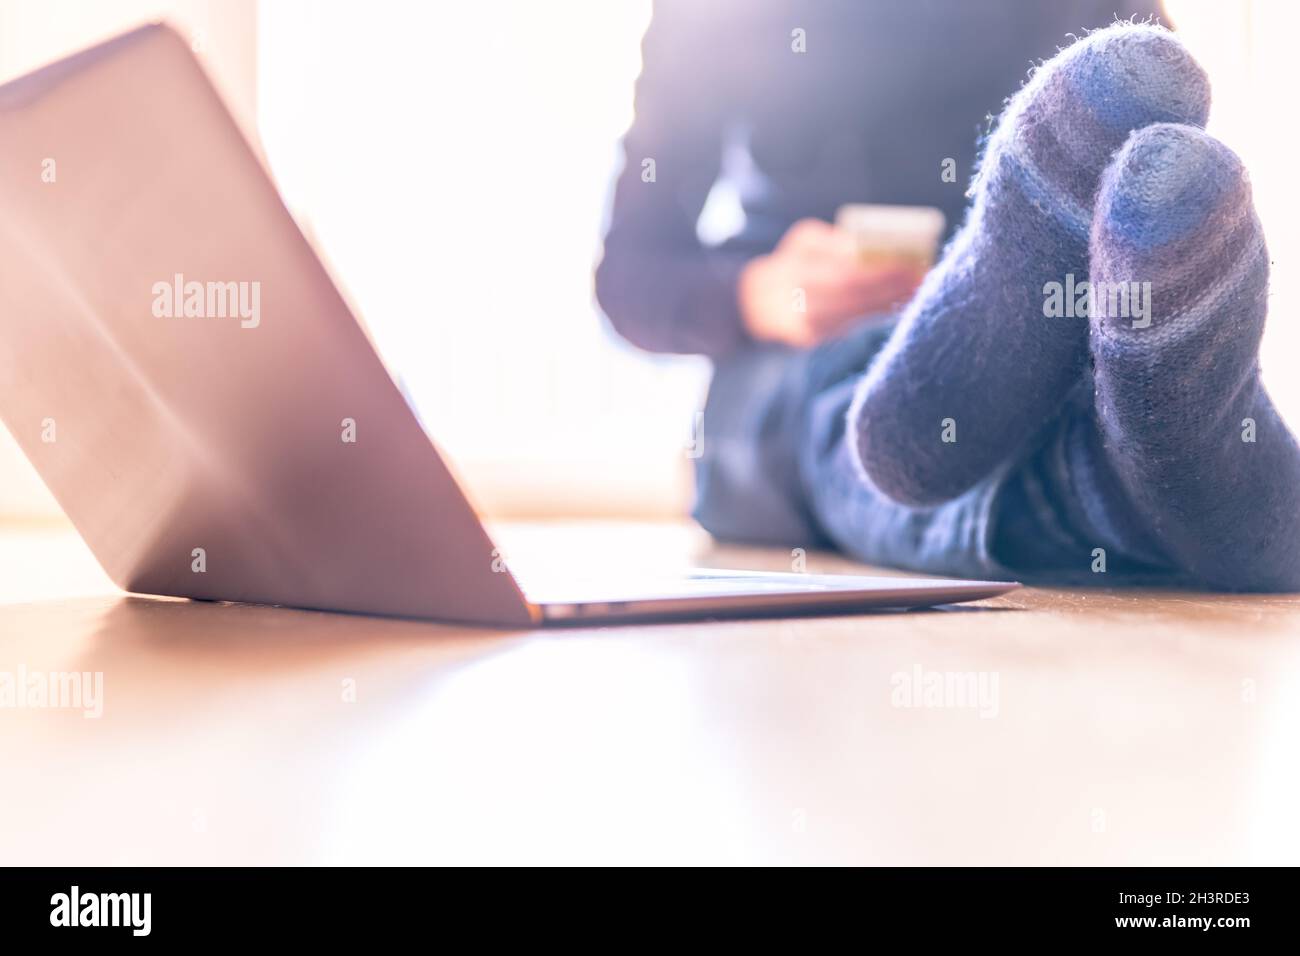 Junger Mann mit warmen Socken und Laptop im Vordergrund auf dem Holzboden, hell Stockfoto